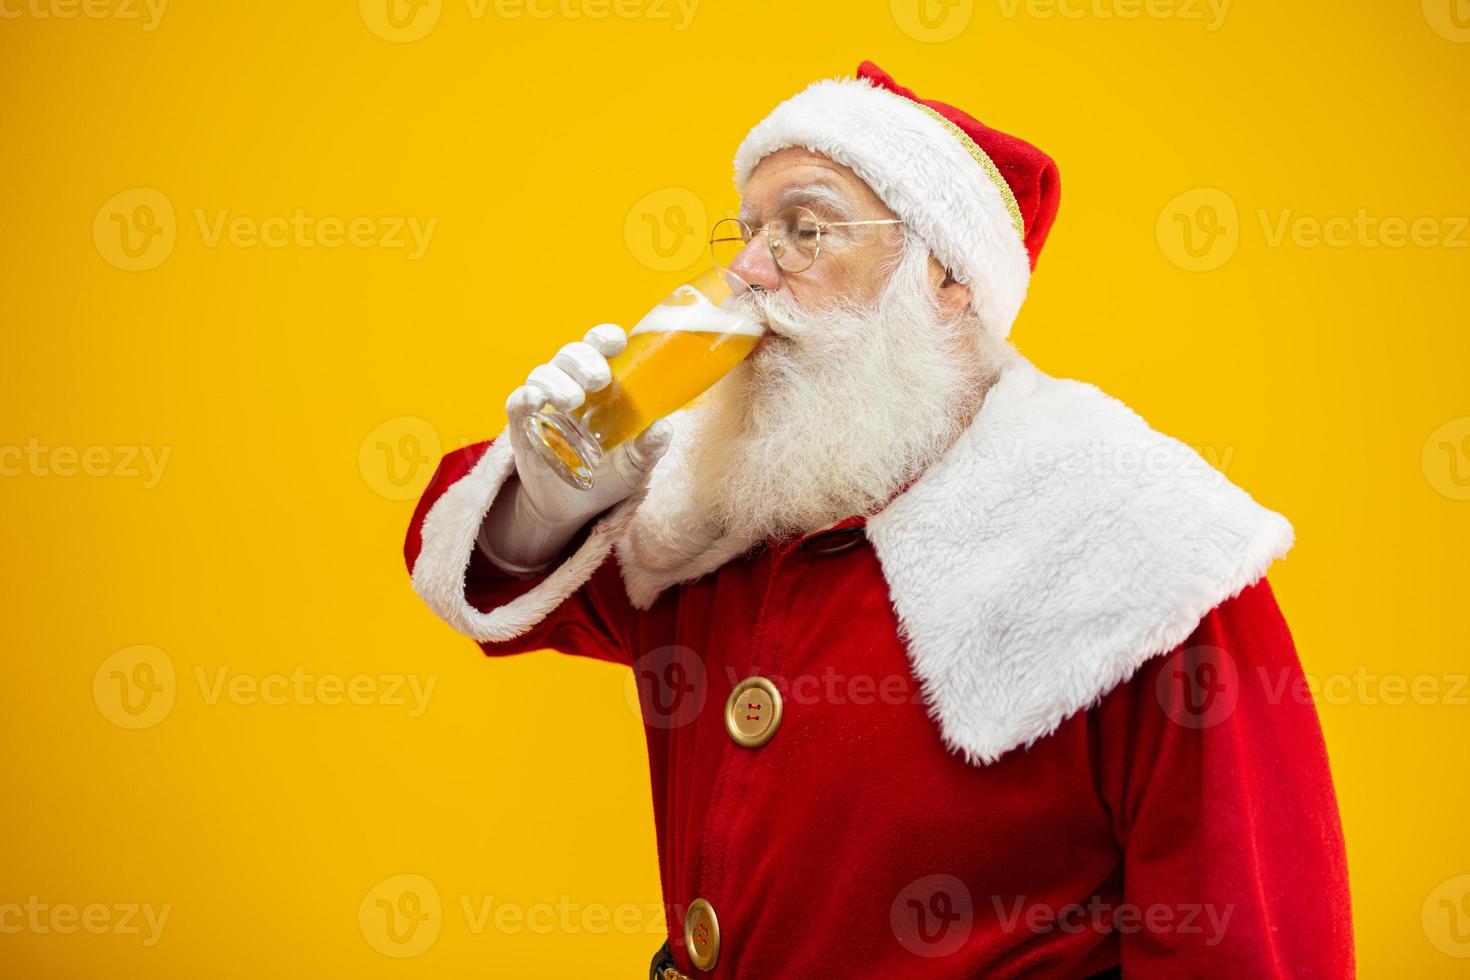 le père noël boit un verre de bière. temps de repos. boisson alcoolisée pendant les vacances. boire avec modération. bière artisanale. joyeux Noël. photo